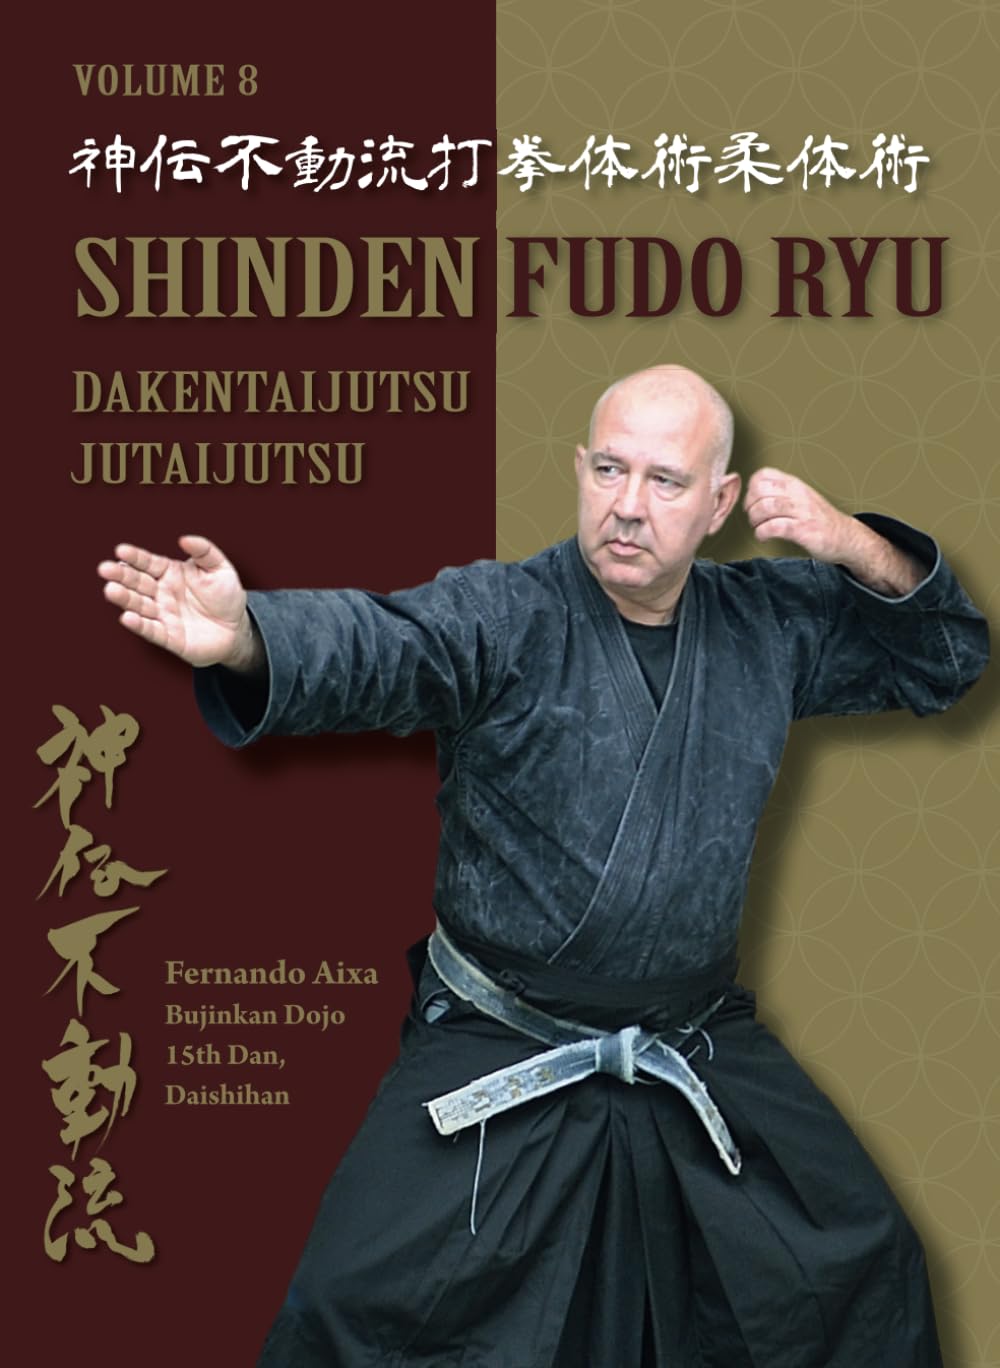 Shinden Fudo Ryu Dakentaijutsu Jutaijutsu Book by Fernando Aixa Torres